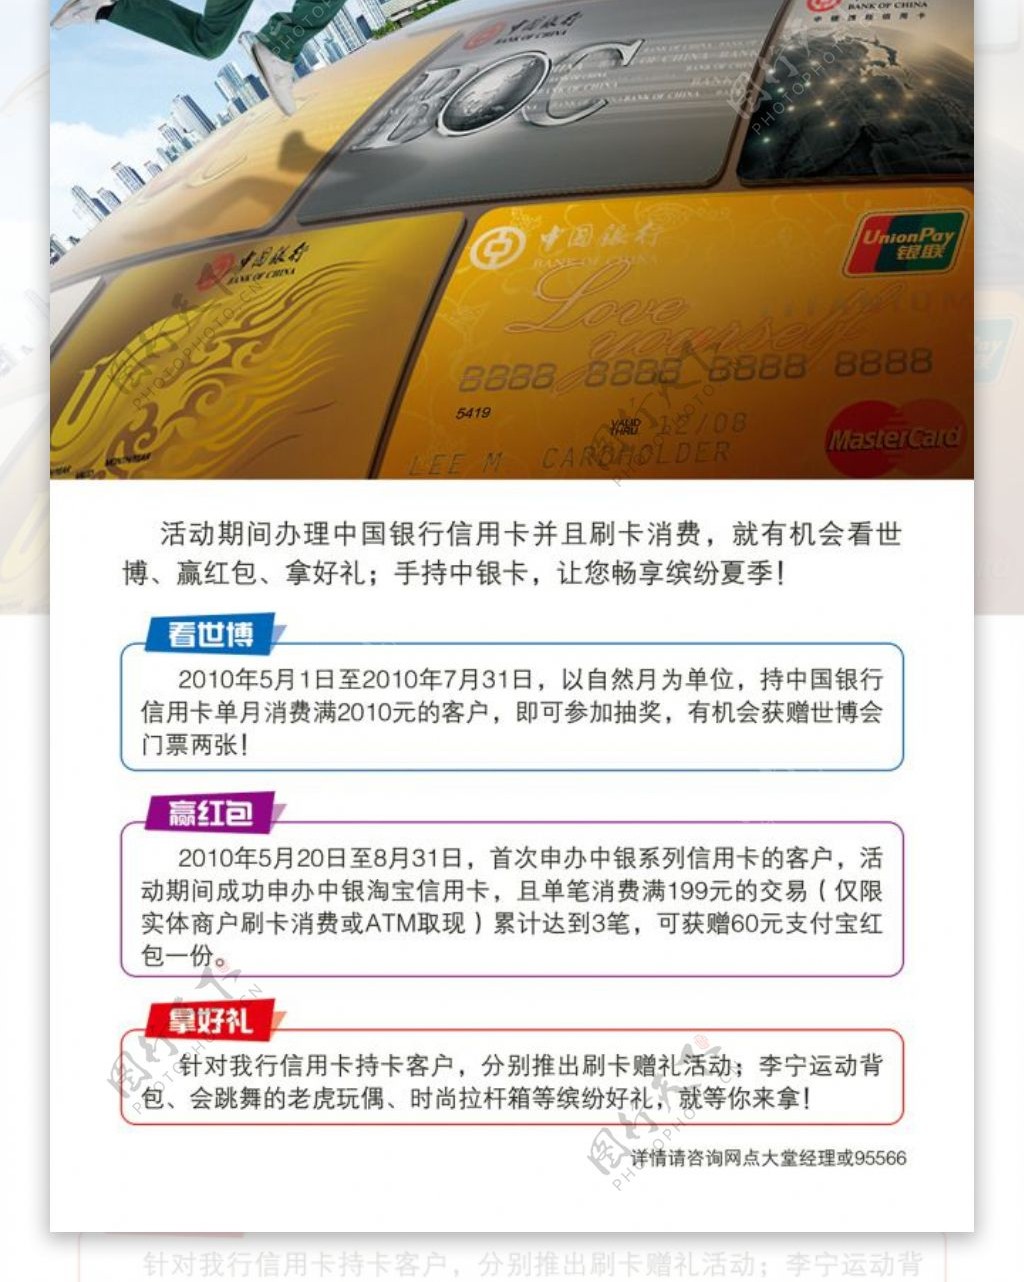 中国银行海报招贴设计